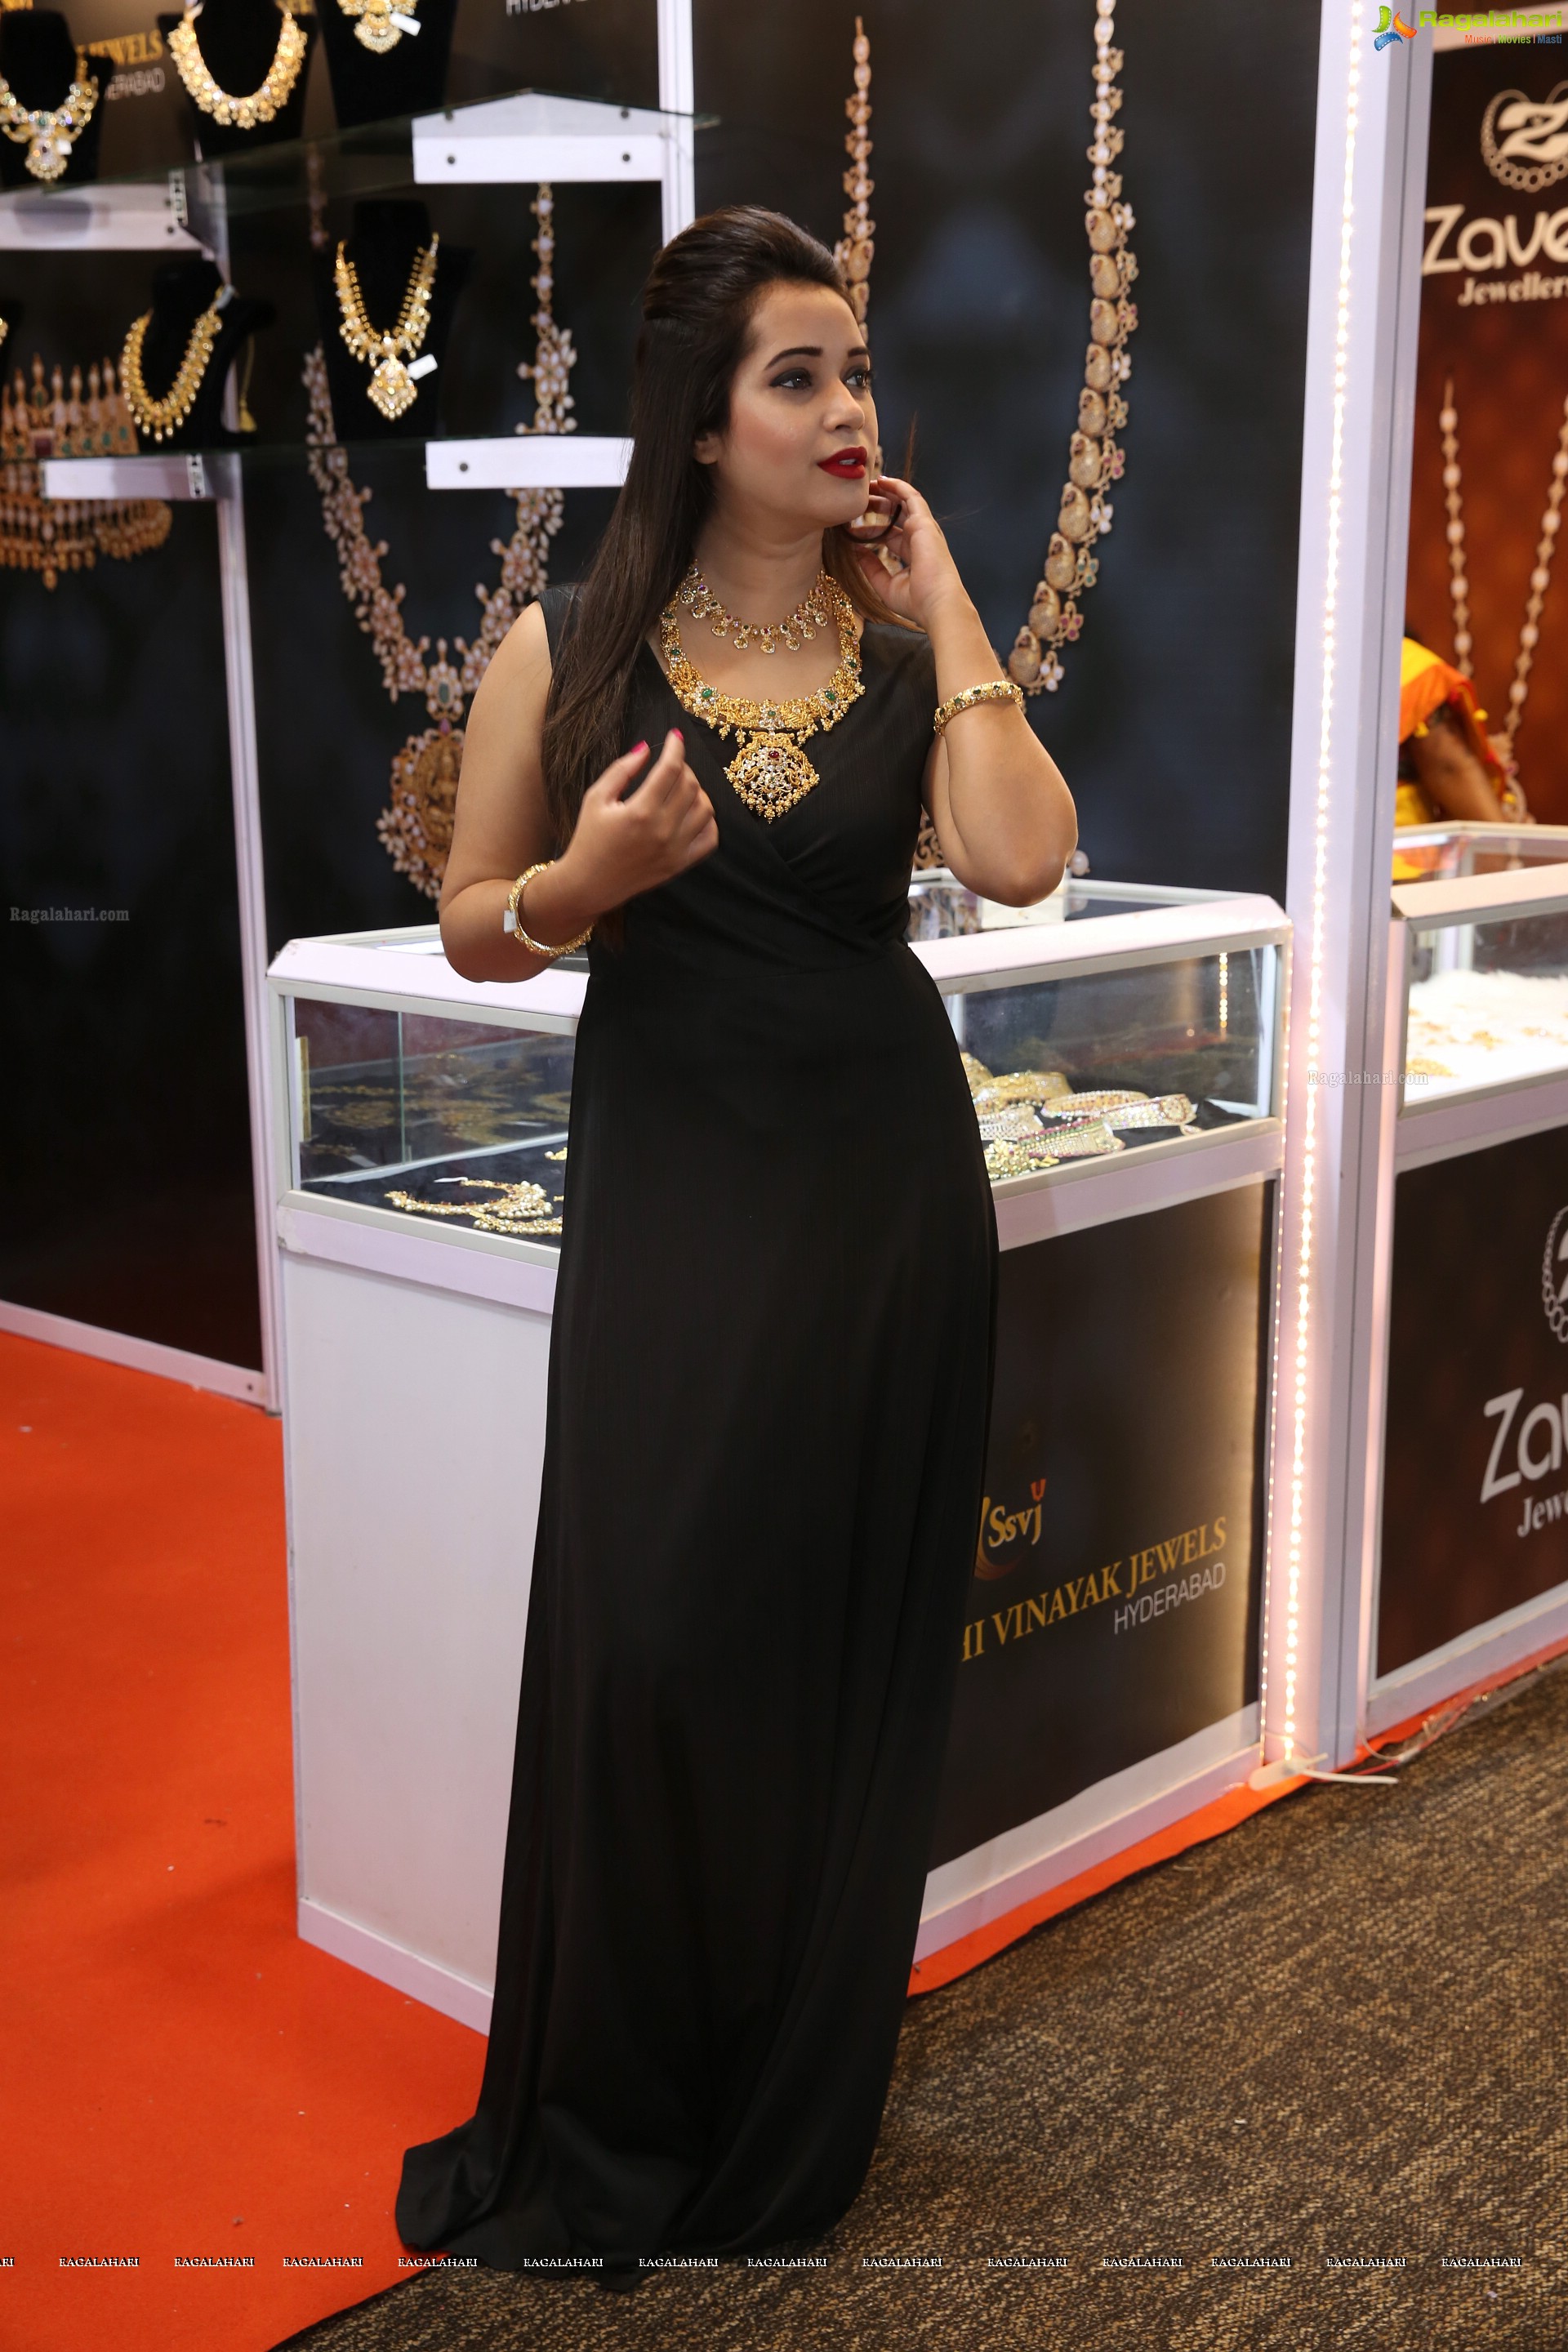 Rehana Parbin @ Hyderabad Jewellery, Pearl & Gem Fair  - HD Gallery